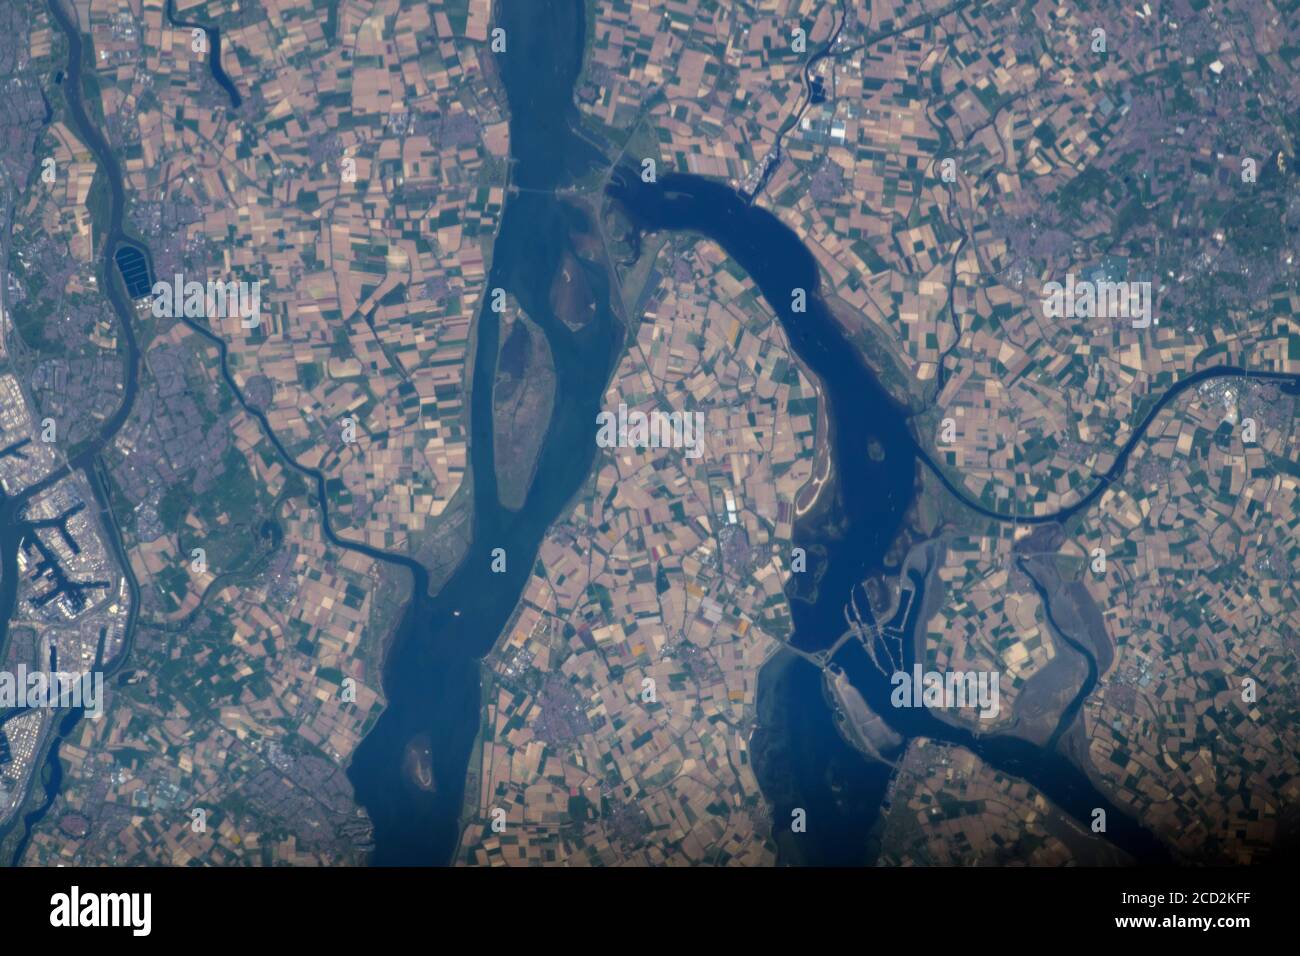 PAESI BASSI - 23 aprile 2020 - il delta del Reno-Mosa-Schelda, un delta fluviale nei Paesi Bassi, è raffigurato dalla Stazione spaziale Internazionale - Foto Stock